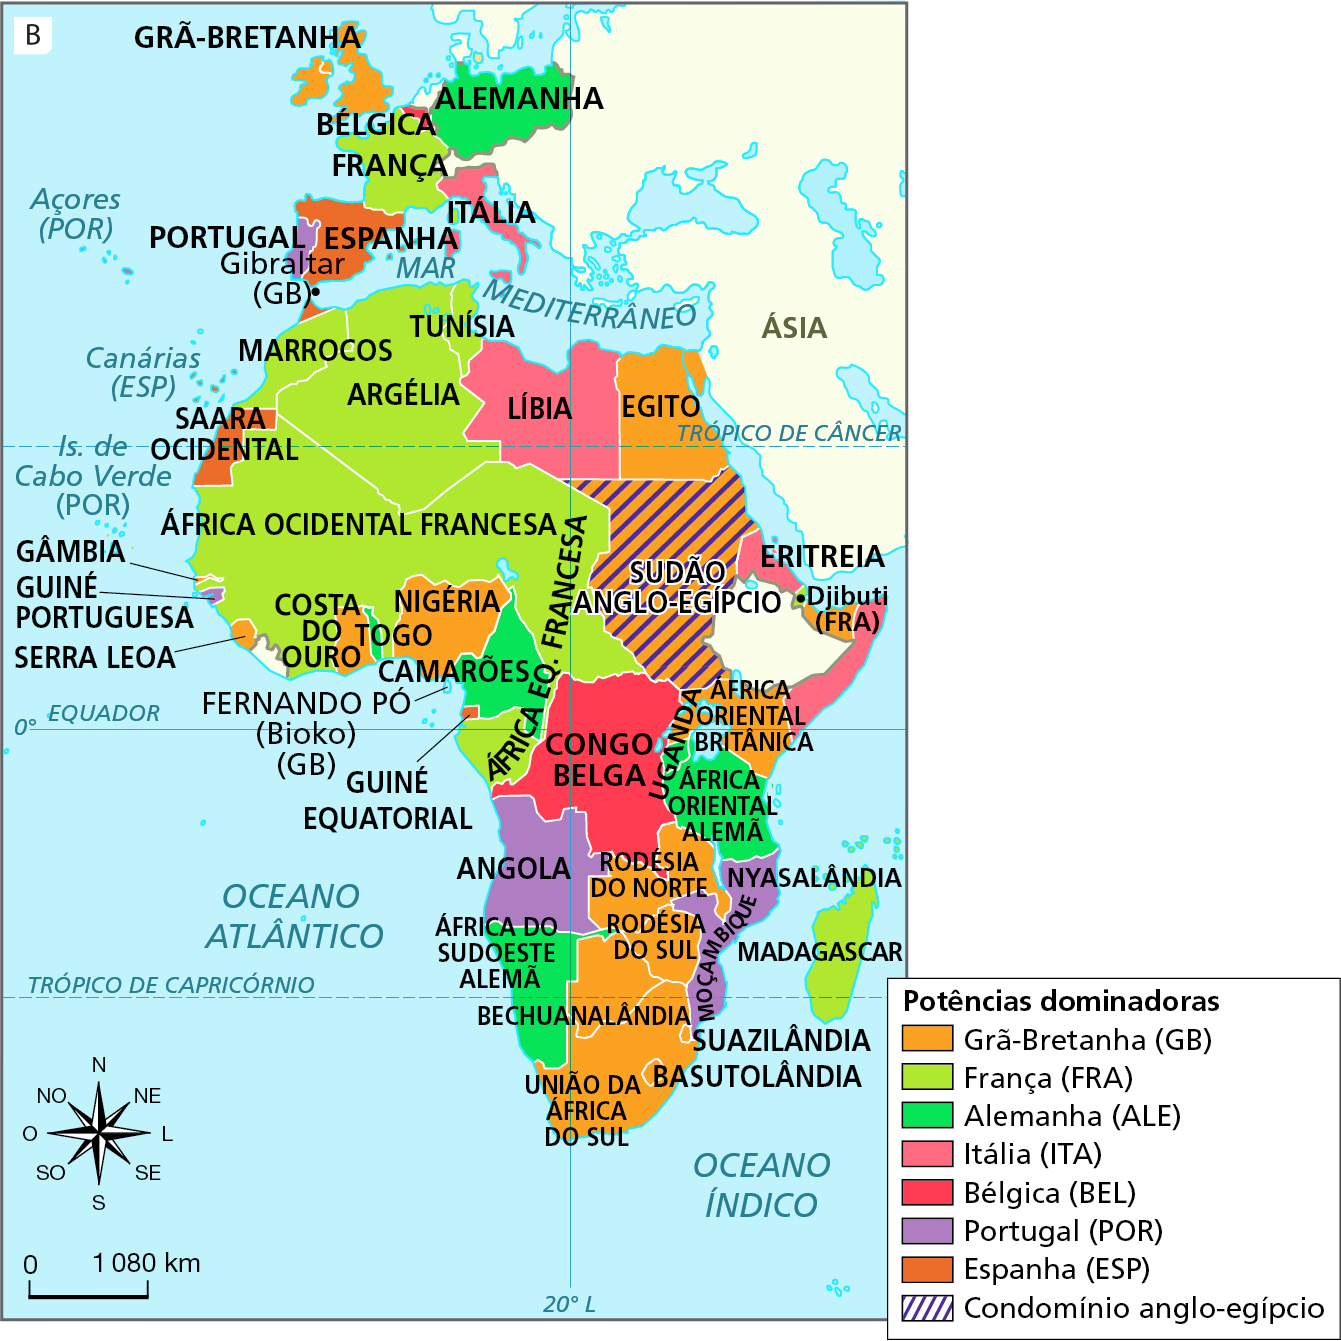 Mapa B. África e potências dominadoras – 1914.
Mapa da África e da Europa Ocidental, representando as potências dominantes e seus territórios colonizados no continente africano, em 1914.
Potências dominadoras e territórios dominados: 
Grã-Bretanha: União da África do Sul, Basutolândia, Suazilândia, Rodésia do Sul e Rodésia do Norte, na região sul do continente; Nigéria, Costa do Ouro e Serra Leoa, na costa centro-oeste; Egito, na região nordeste; na região centro-leste, a África Oriental Britânica. Ao norte da Europa, o território da Grã-Bretanha.
França: na parte central, oeste e norte da África: Marrocos, Tunísia e Argélia, na porção norte; África Ocidental Francesa e África Equatorial Francesa, na parte central; Ilha de Madagascar, a sudeste do continente. No centro do território europeu, o território da França, ao norte da Espanha, oeste da Alemanha e sul da Grã-Bretanha.
Alemanha: África do Sudoeste Alemã e Camarões, na porção oeste; África Oriental Alemã, na porção leste. À leste da Europa Central, o território alemão.
Itália: Líbia, no centro-norte, ao sul do mediterrâneo; Eritreia, na costa leste, ao sul do Trópico de Câncer. No sudeste do continente europeu, a território da Itália, na costa norte do Mar Mediterrâneo.
Bélgica: Congo Belga, no centro do continente africano, atravessado pela Linha do Equador e paralelo 20 graus Leste. Na Europa Central, ao norte da França, o território belga. 
Portugal: Guiné Portuguesa e Angola, na costa oeste; Moçambique, na costa leste; no extremo sudoeste da Europa, o território de Portugal. 
Espanha: Saara Ocidental, no noroeste do continente africano; no sul da Europa, a leste de Portugal e sul da França, o território espanhol. 
Condomínio anglo-egípicio: região do Sudão Anglo-Egípicio, na faixa nordeste do continente. 
Na parte de baixo, à esquerda, rosa dos ventos e escala de 0 a 1.080 quilômetros.